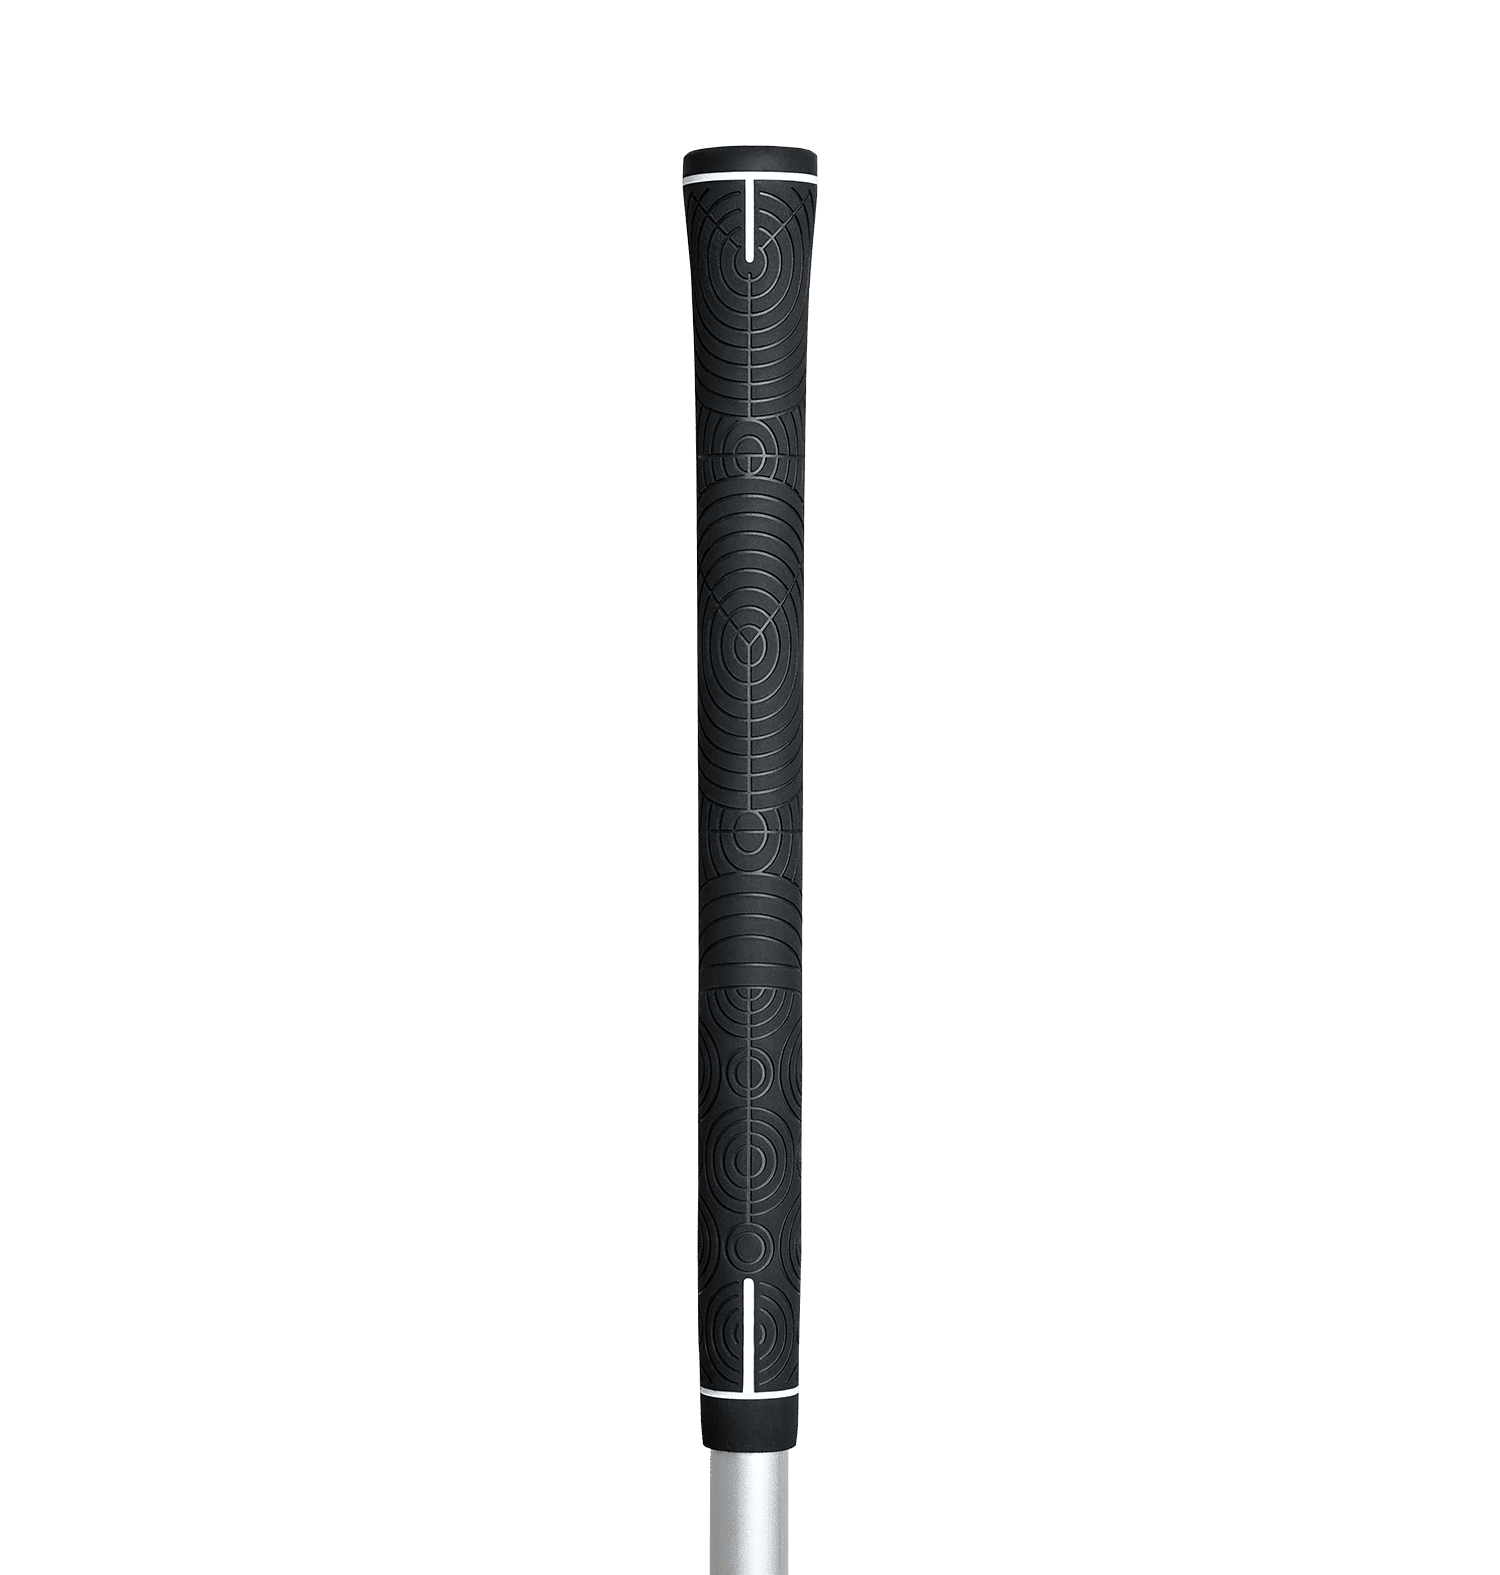 Standard Coal Golf Grip